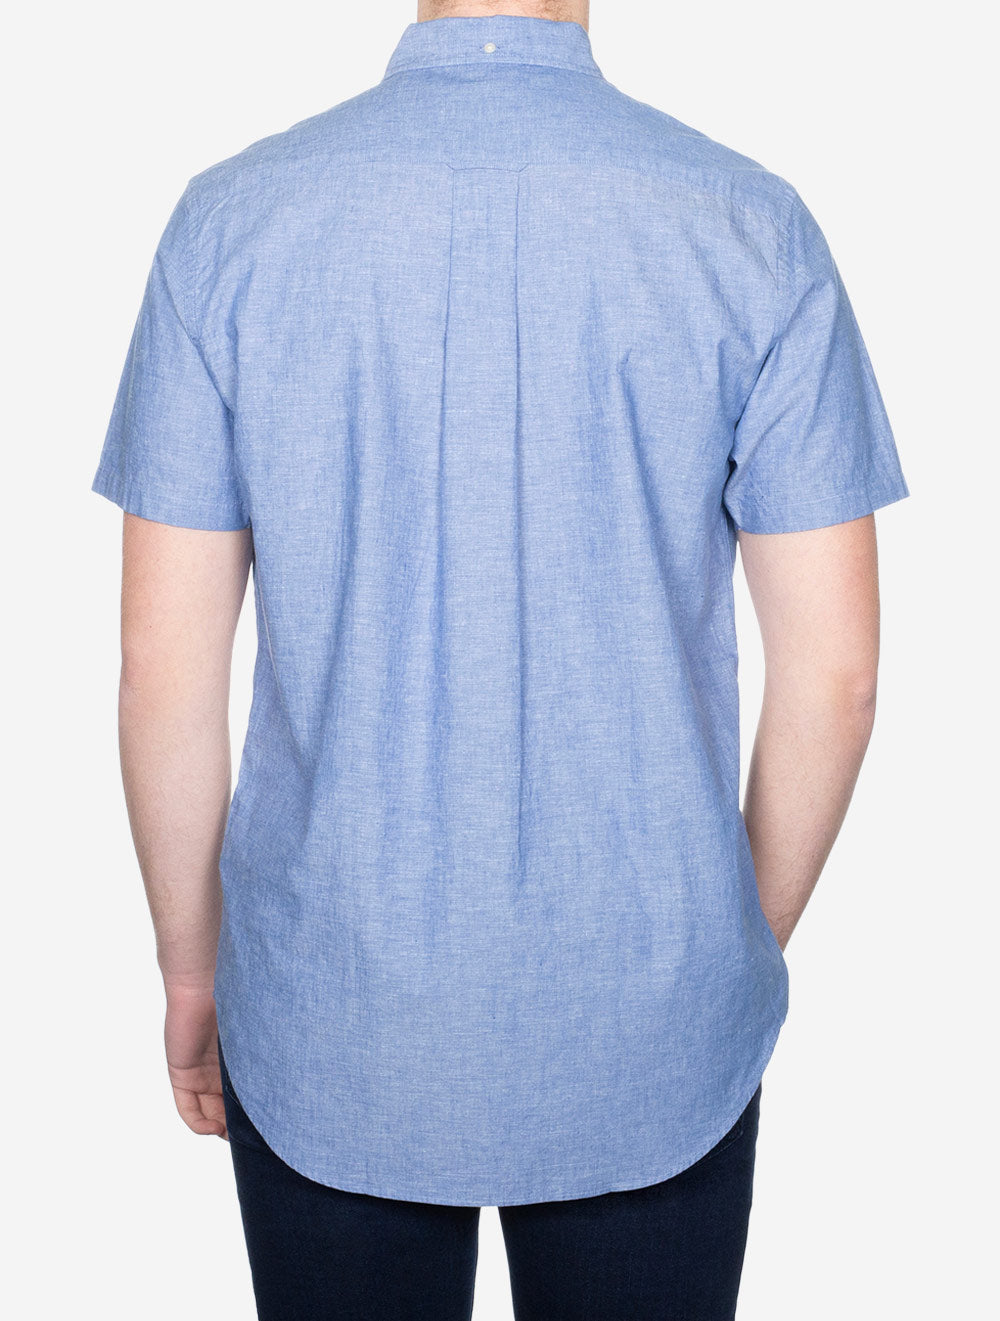 Regular Cotton Linen Short Sleeve Shirt Rich Blue